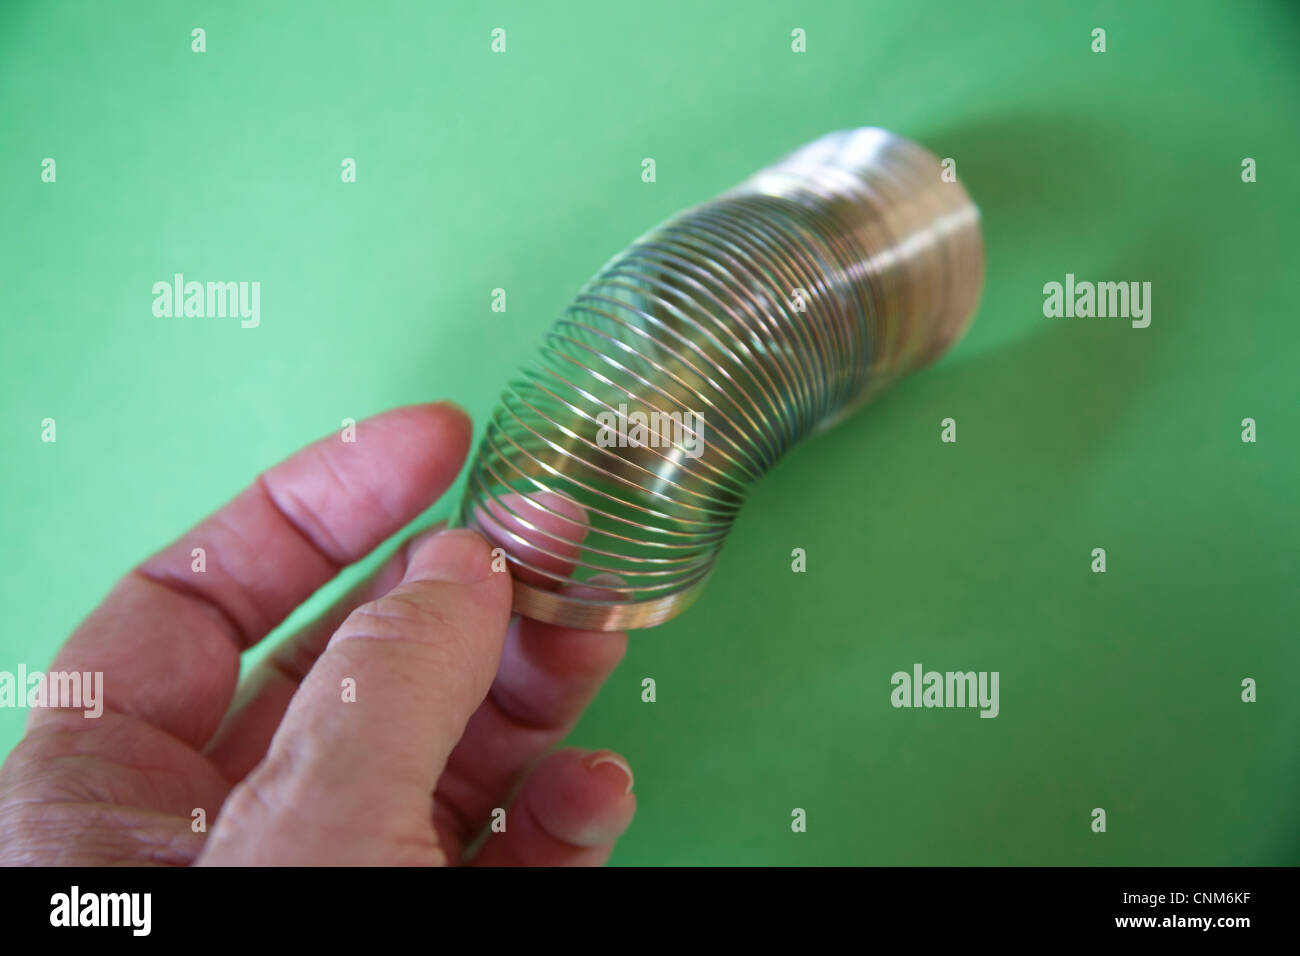 Moviendo la mano Slinky o perezoso juguete de resorte hechas de un resorte helicoidal que se extiende y puede rebotar hacia arriba y hacia abajo Foto de stock